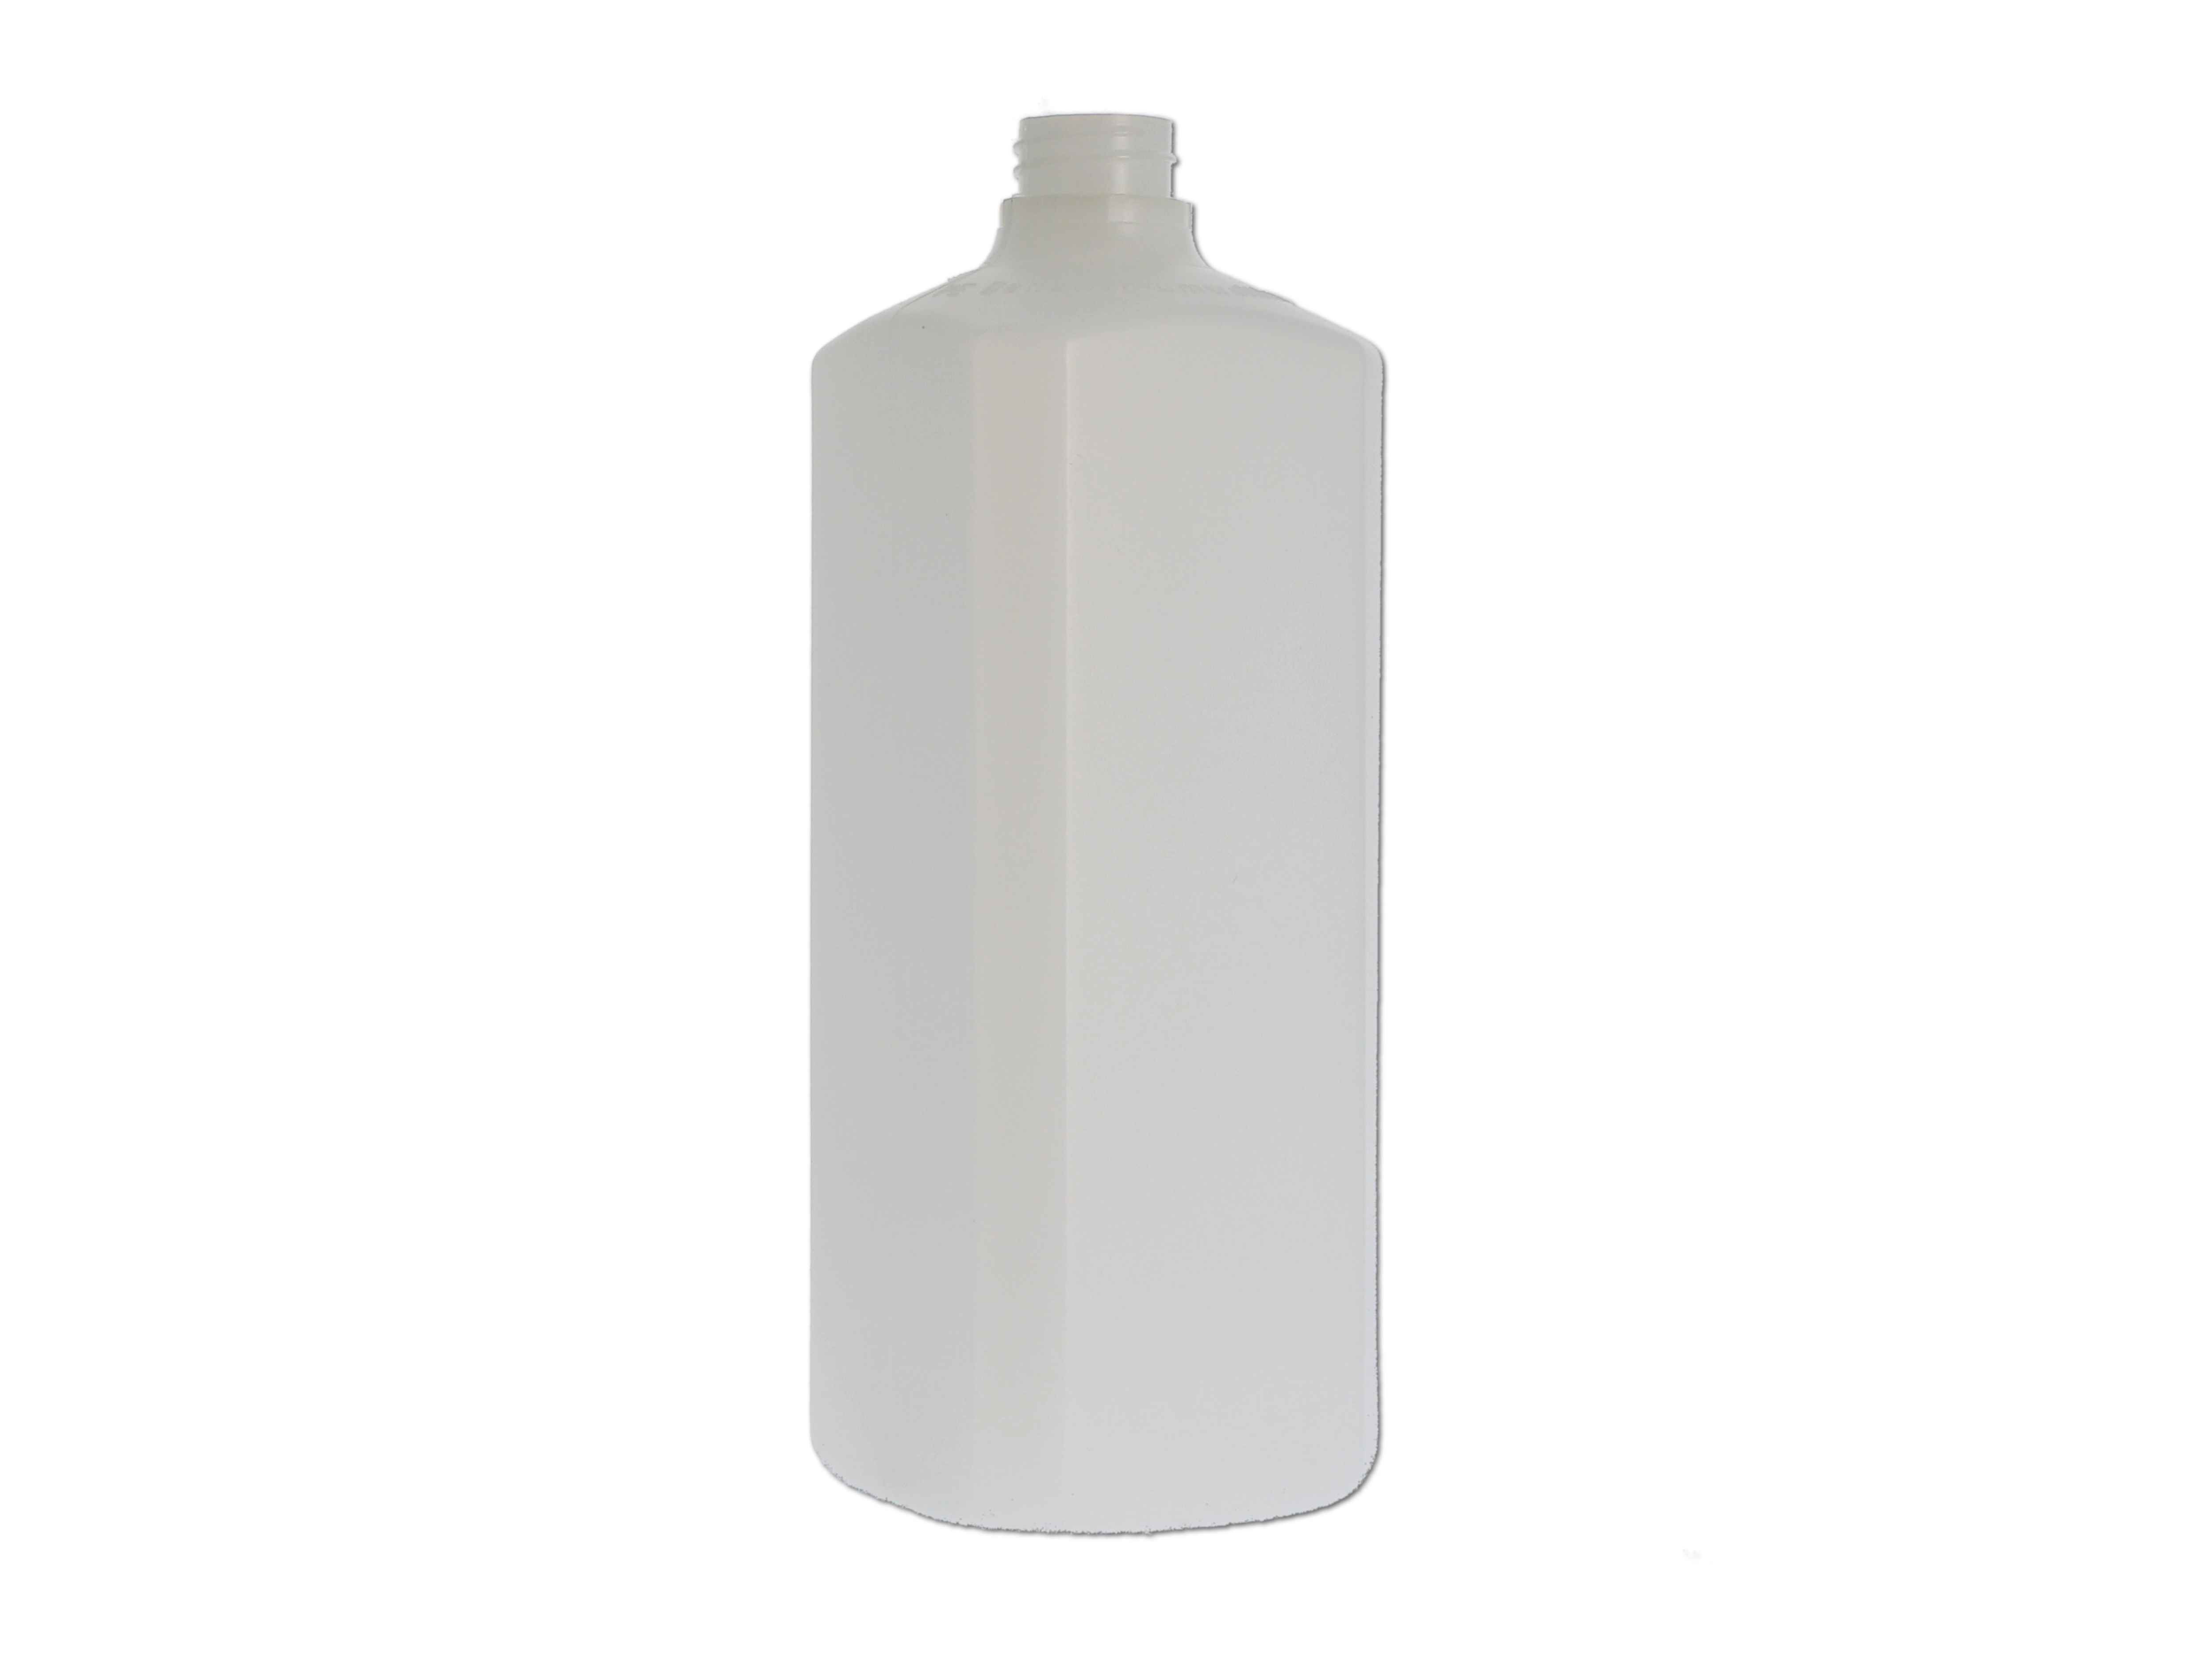    Kunststoff-Flasche 4Kant, ohne Verschluss - 1000ml